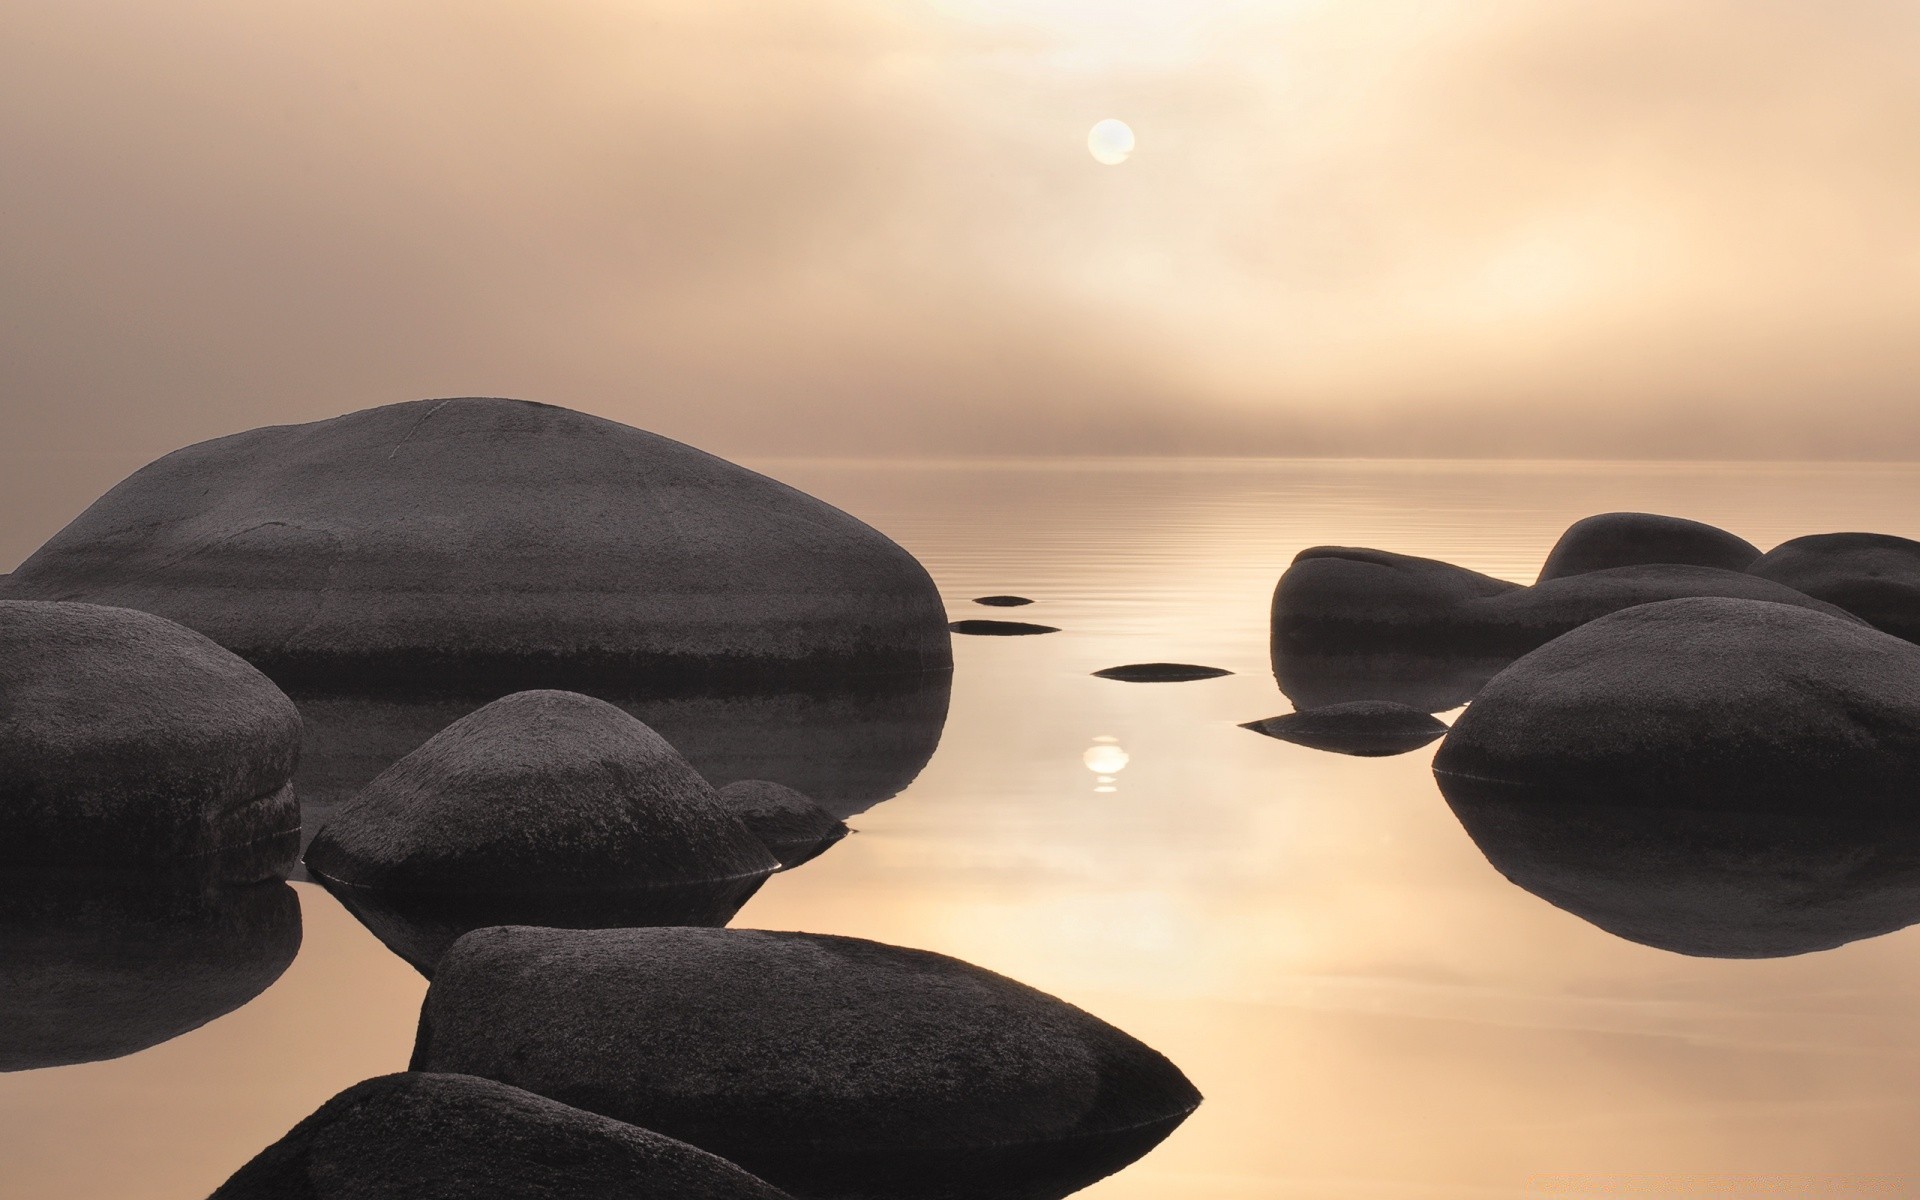 озера дзен пляж баланс стабильность медитация закат воды минимализм релаксация море рок природа солнце боулдер моря вечером хладнокровие булыжник гармония